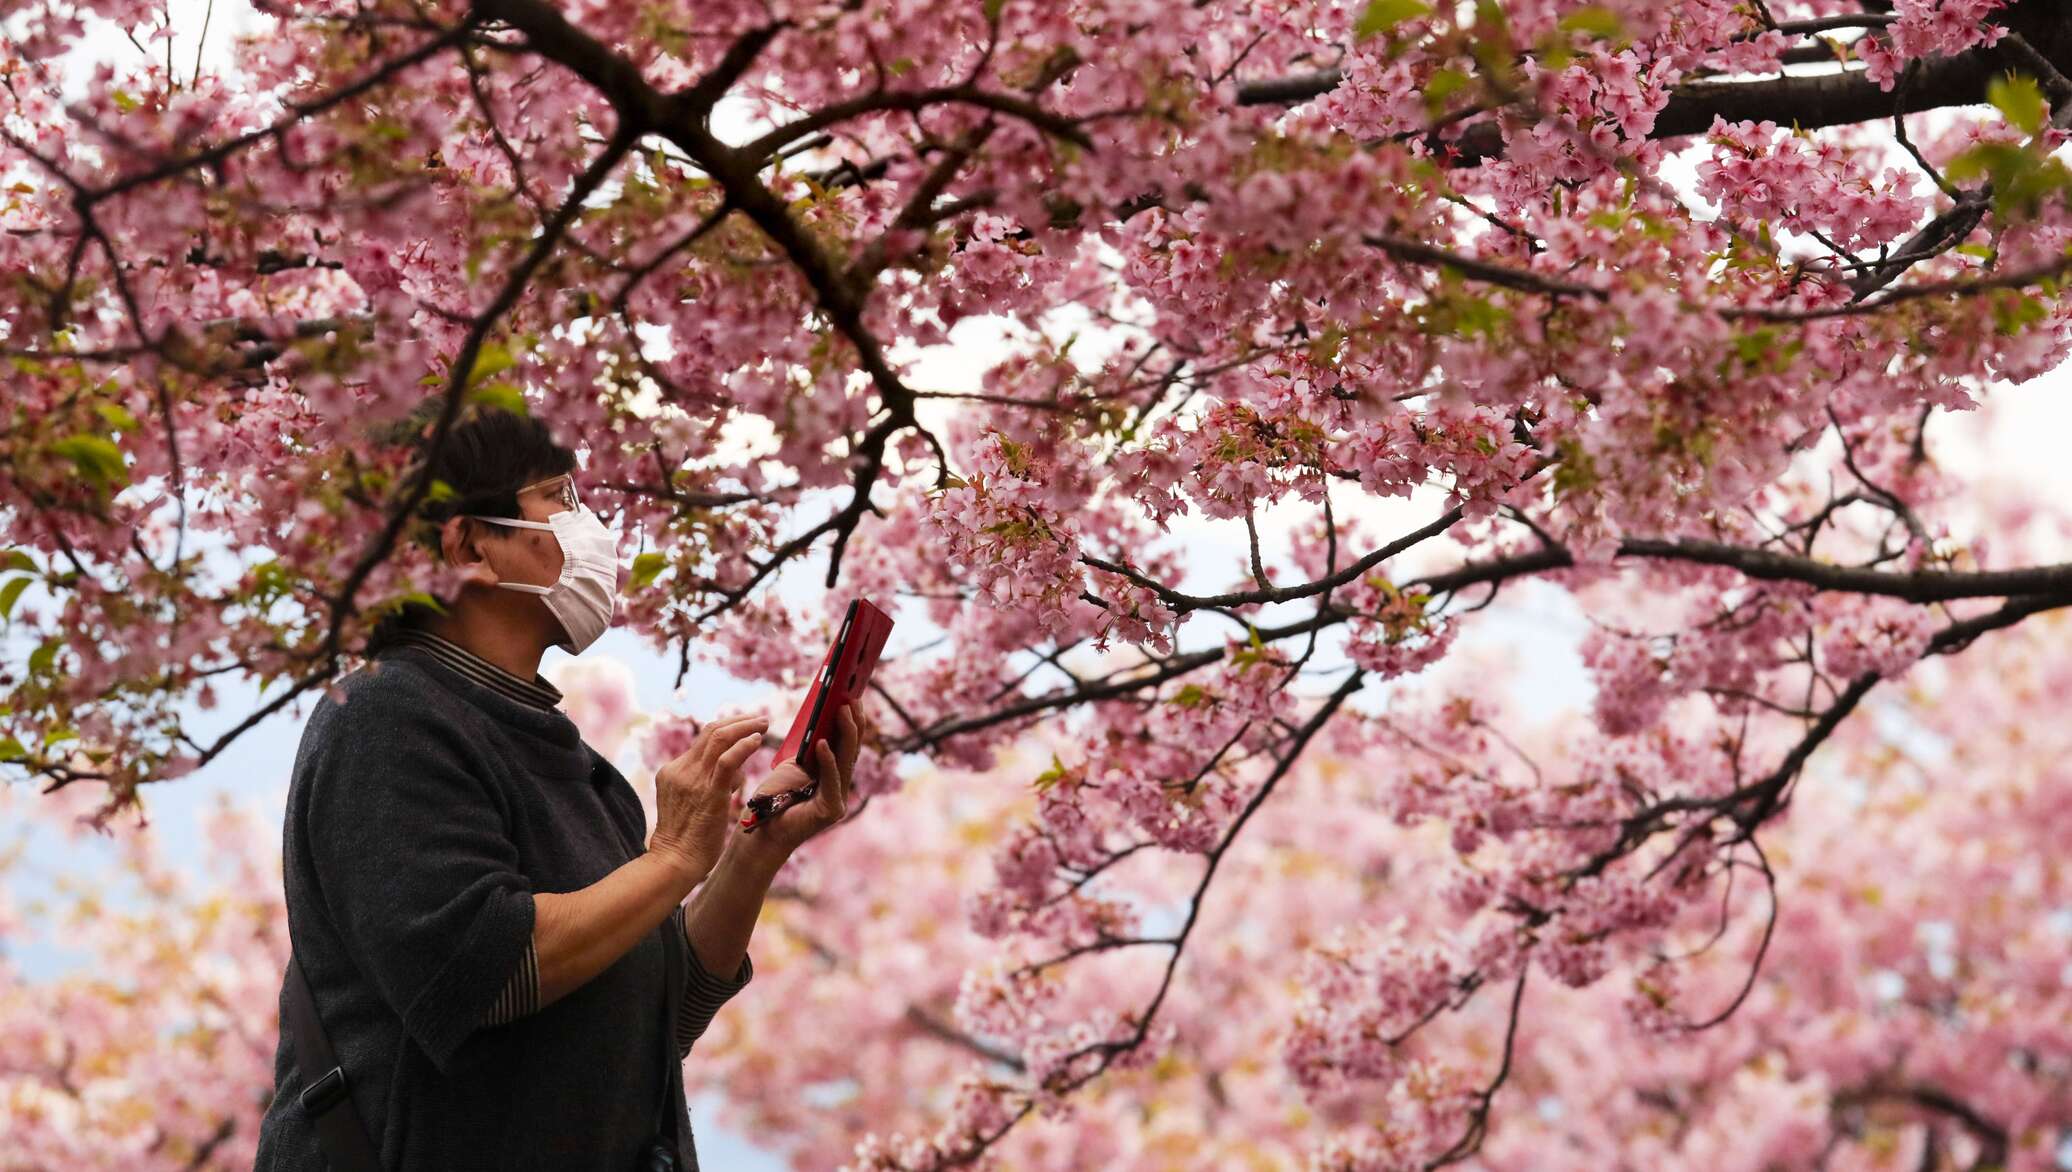 День цветущей сакуры. Праздник цветения вишни Сакуры в Японии. Фестиваль цветения и любования сакурой – Япония. Ханами в Японии праздник цветения Сакуры.